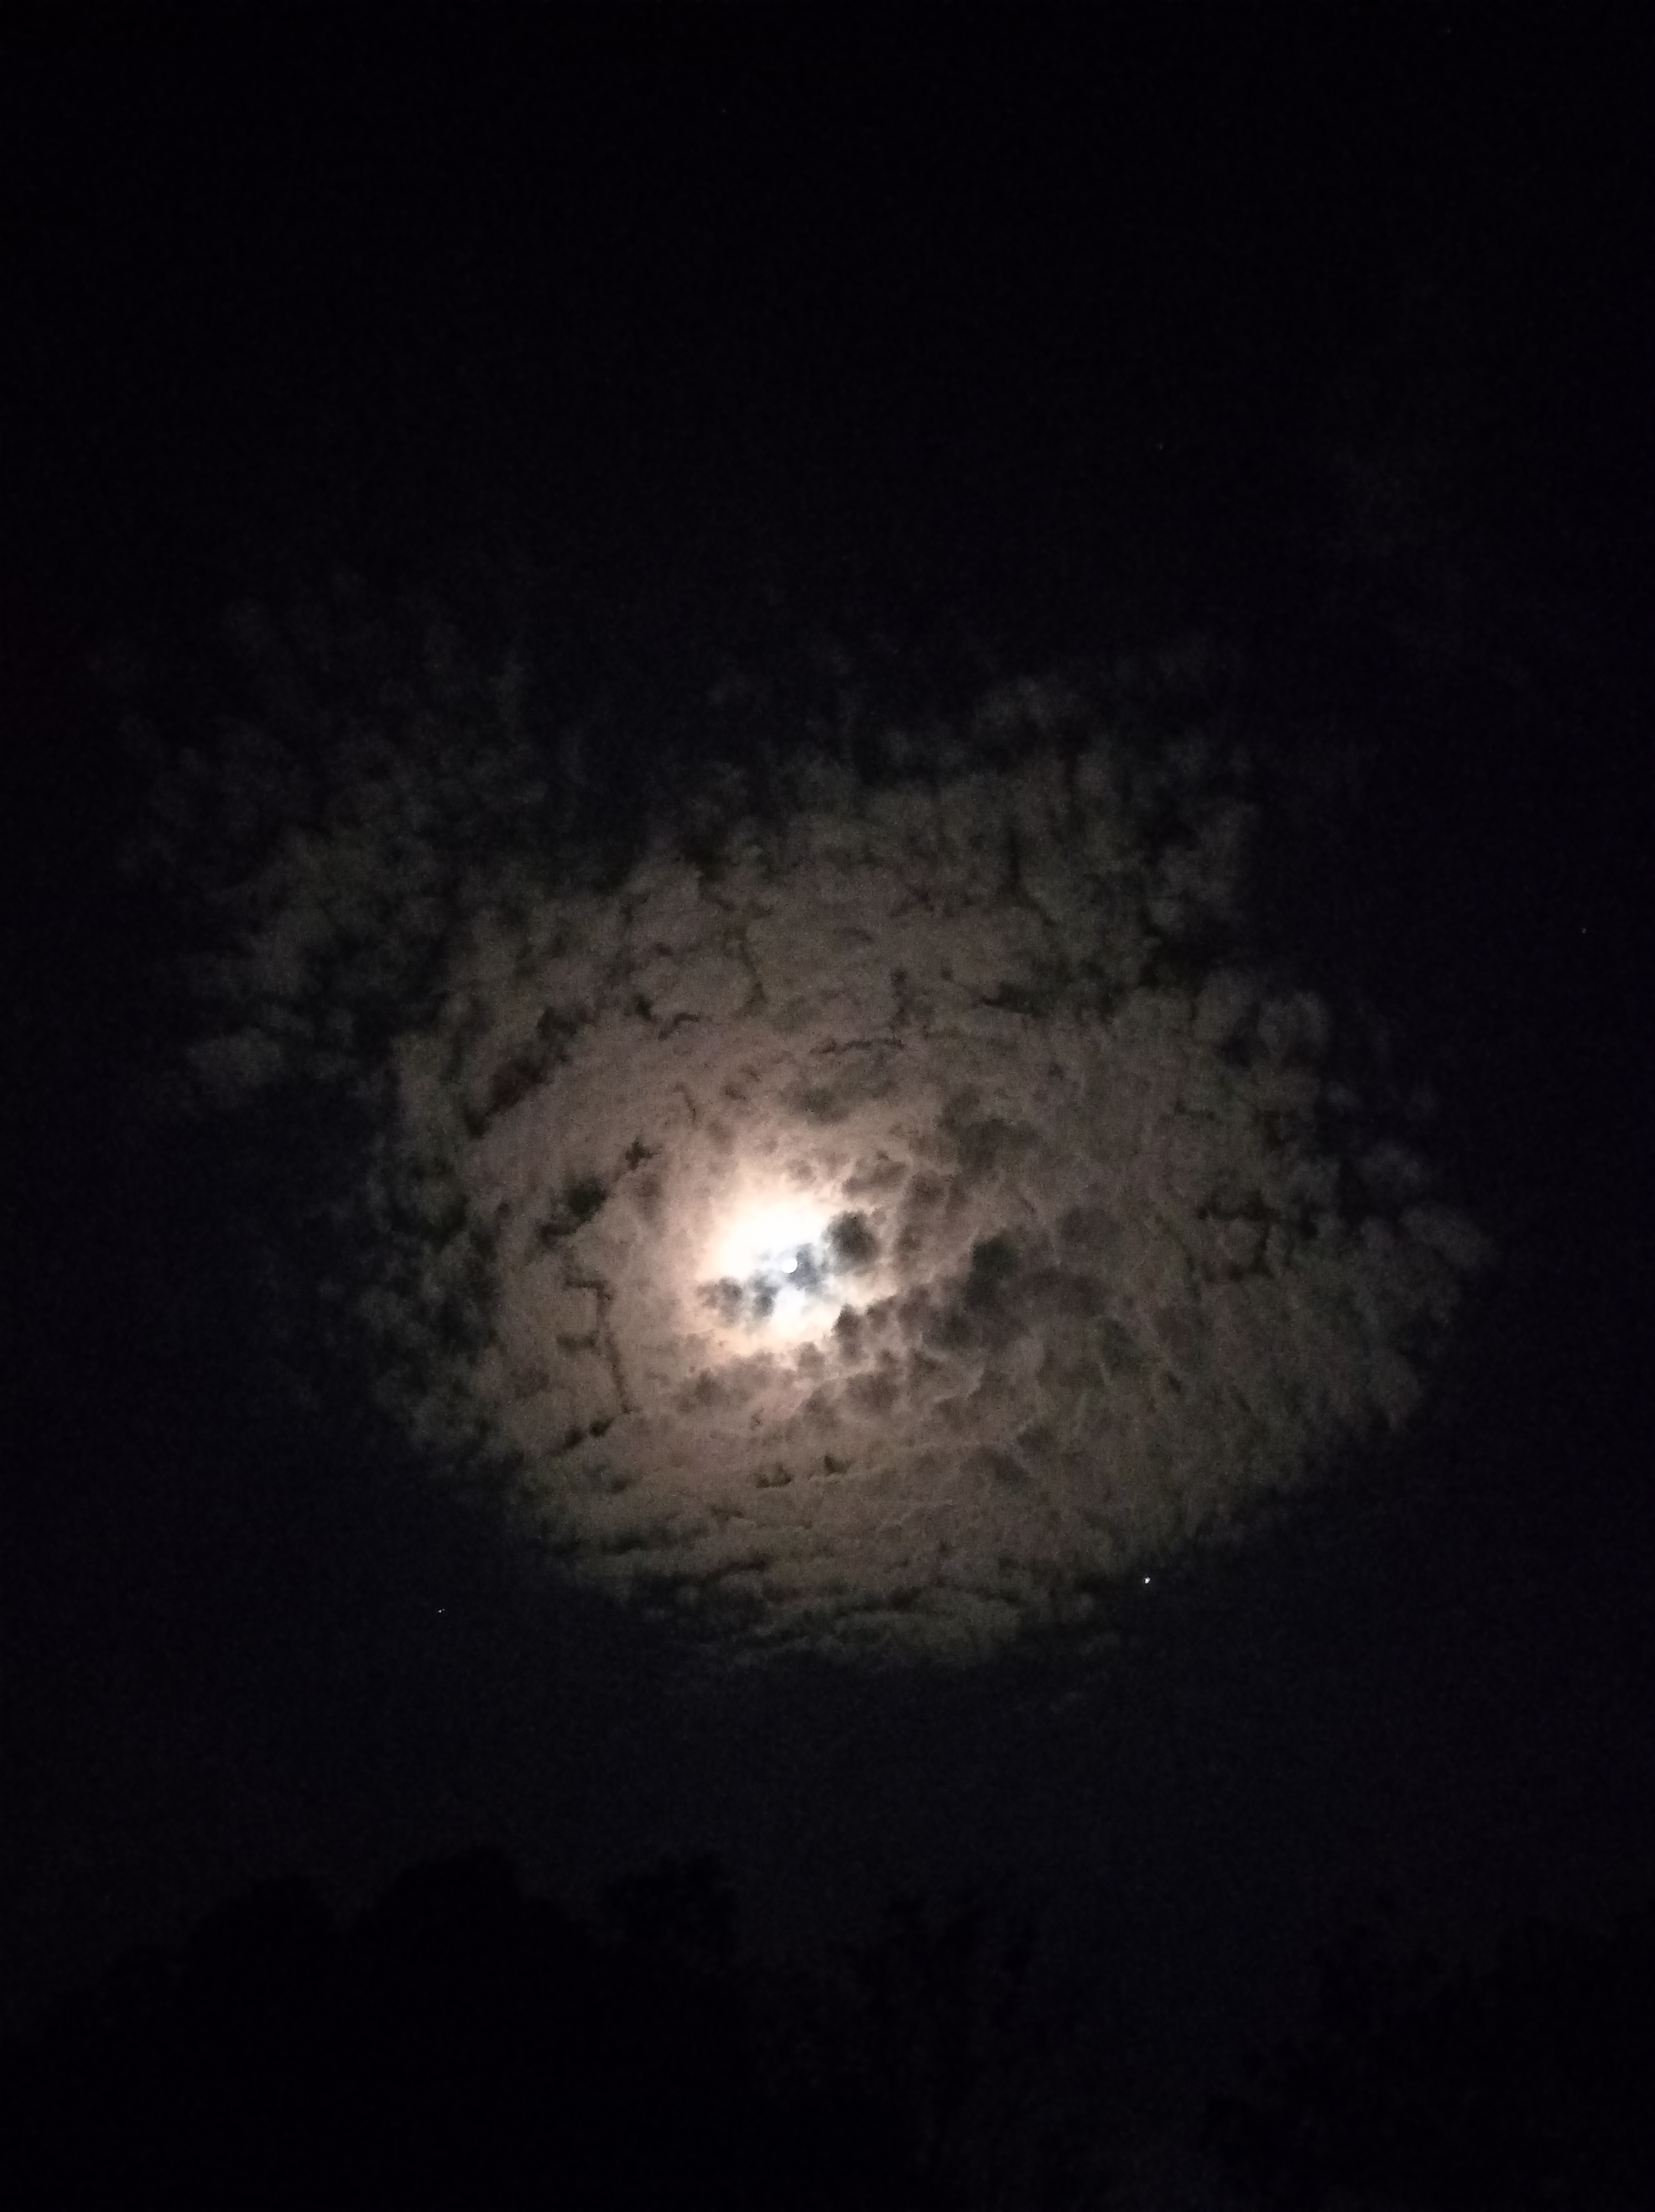 उफ्फ मेरा चाँद…'s image